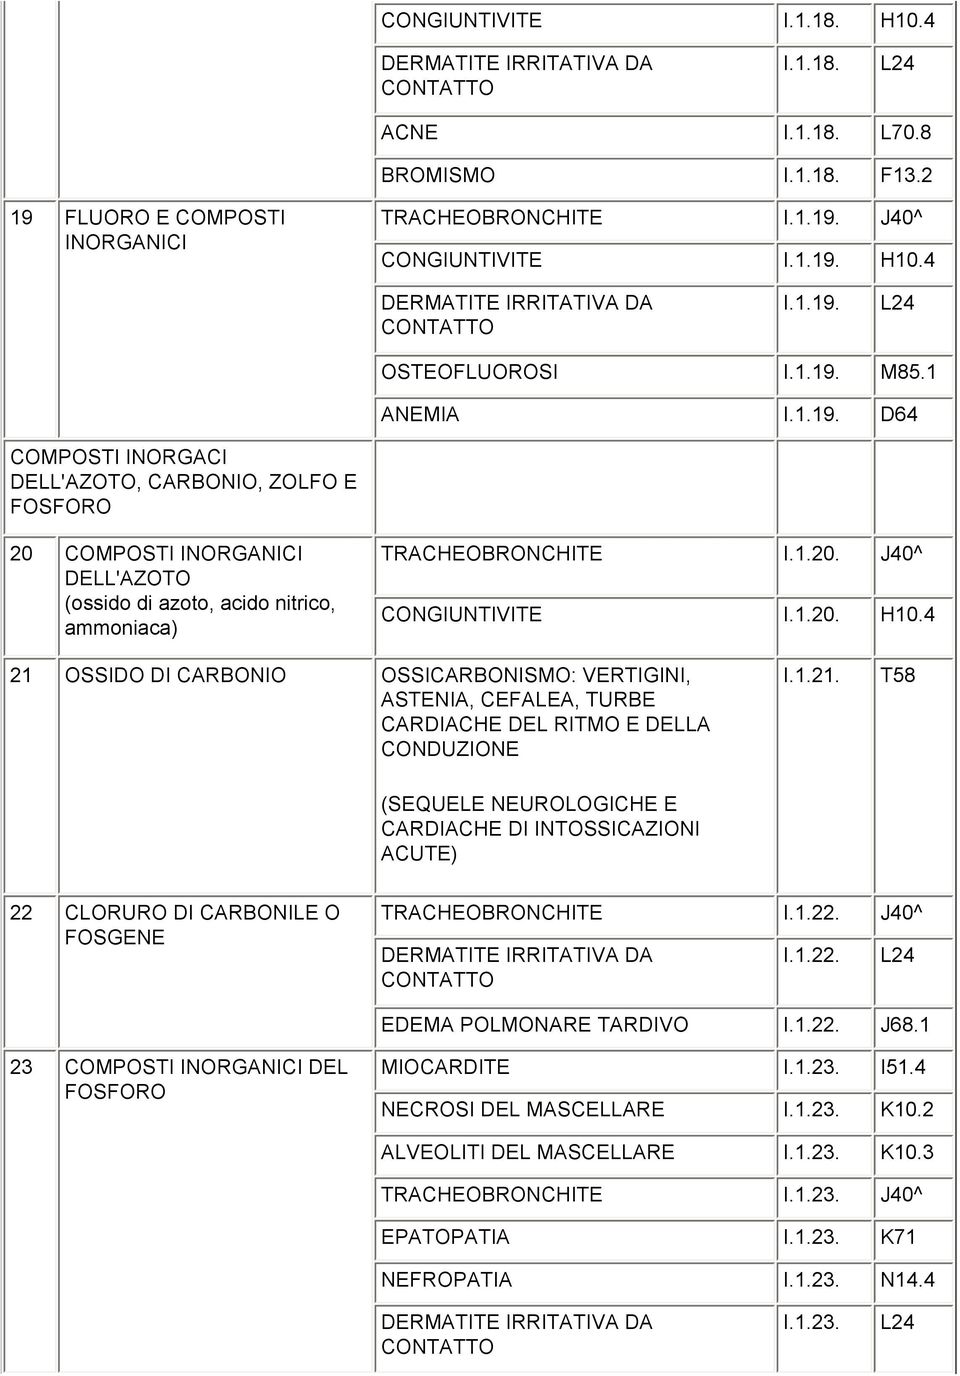 1.20. H10.4 21 OSSIDO DI CARBONIO OSSICARBONISMO: VERTIGINI, ASTENIA, CEFALEA, TURBE CARDIACHE DEL RITMO E DELLA CONDUZIONE I.1.21. T58 (SEQUELE NEUROLOGICHE E CARDIACHE DI INTOSSICAZIONI ACUTE) 22 CLORURO DI CARBONILE O FOSGENE TRACHEOBRONCHITE I.